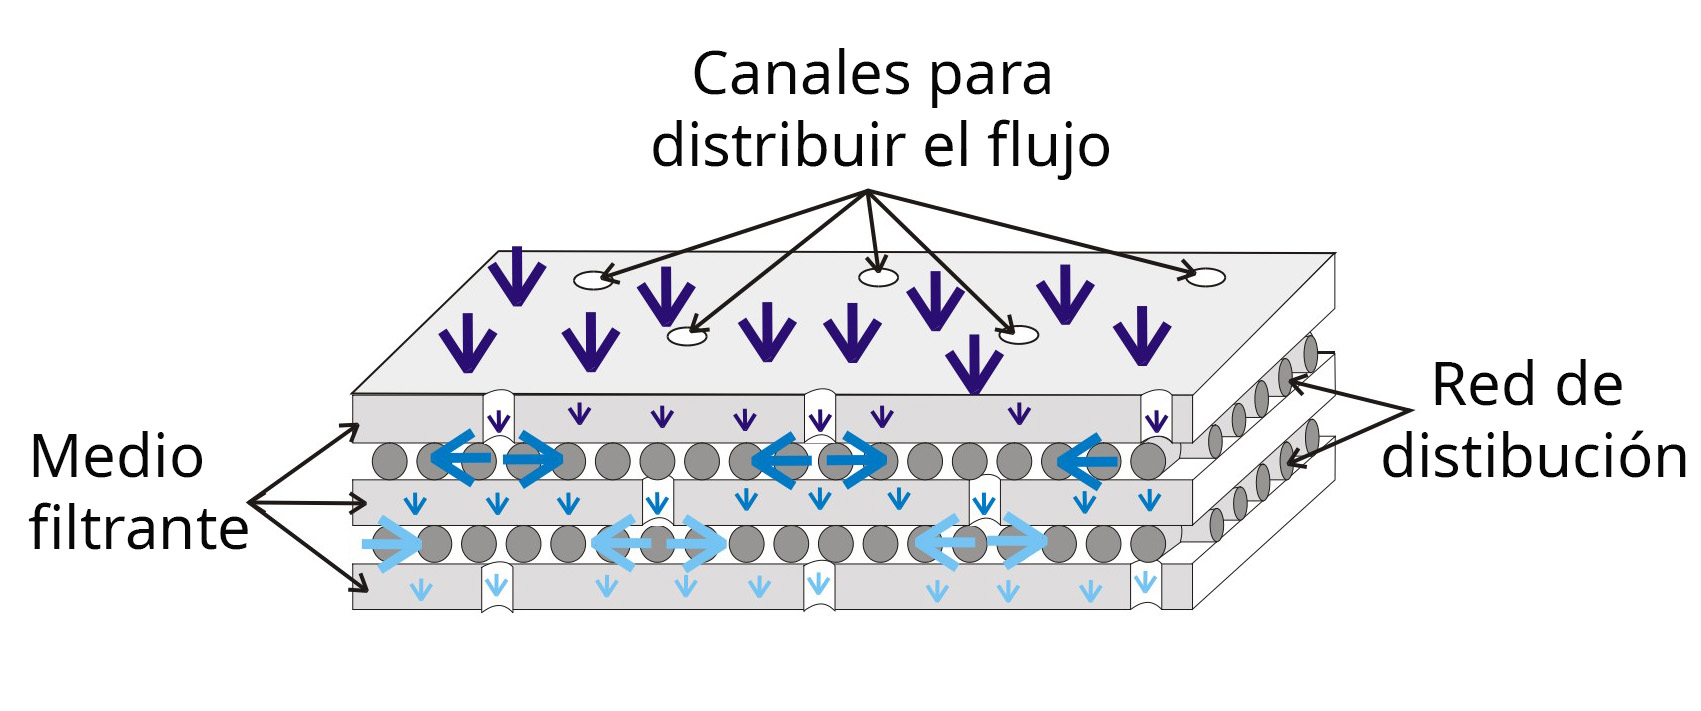 Cartucho Betapure NT-T distribución de canales y fluidos